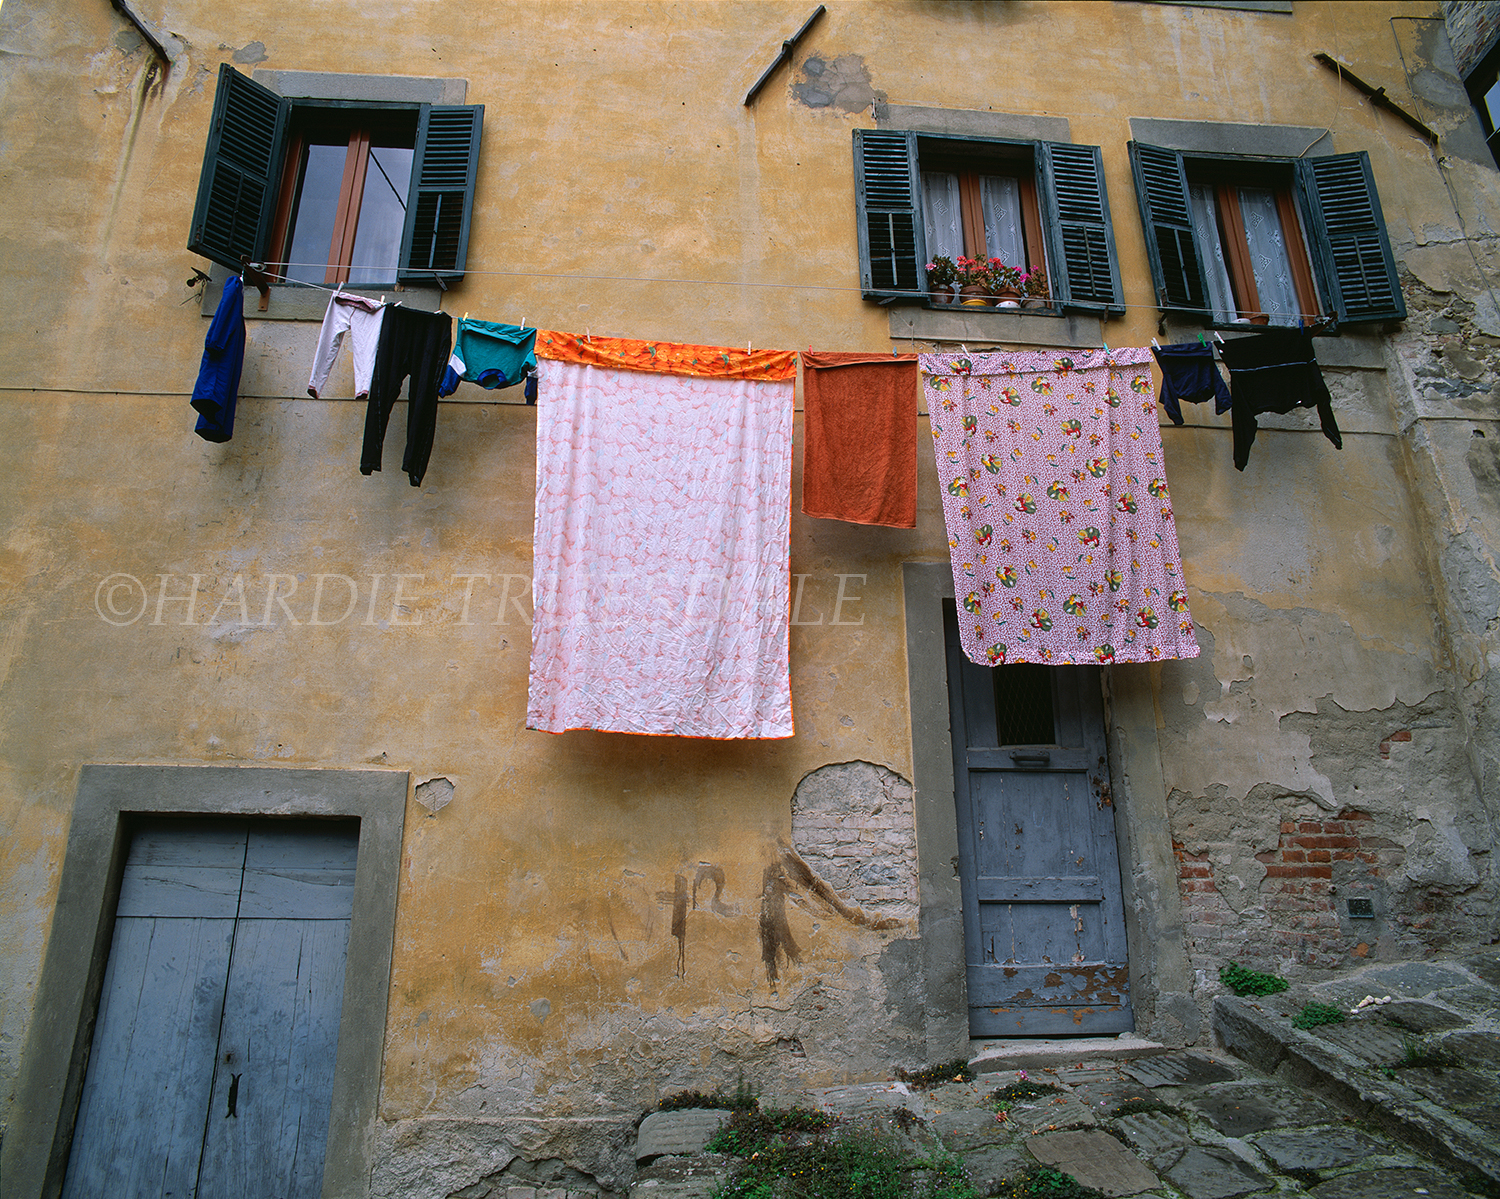  Ity#1 "Italian Laundry", Barga, Tuscany, Italy 